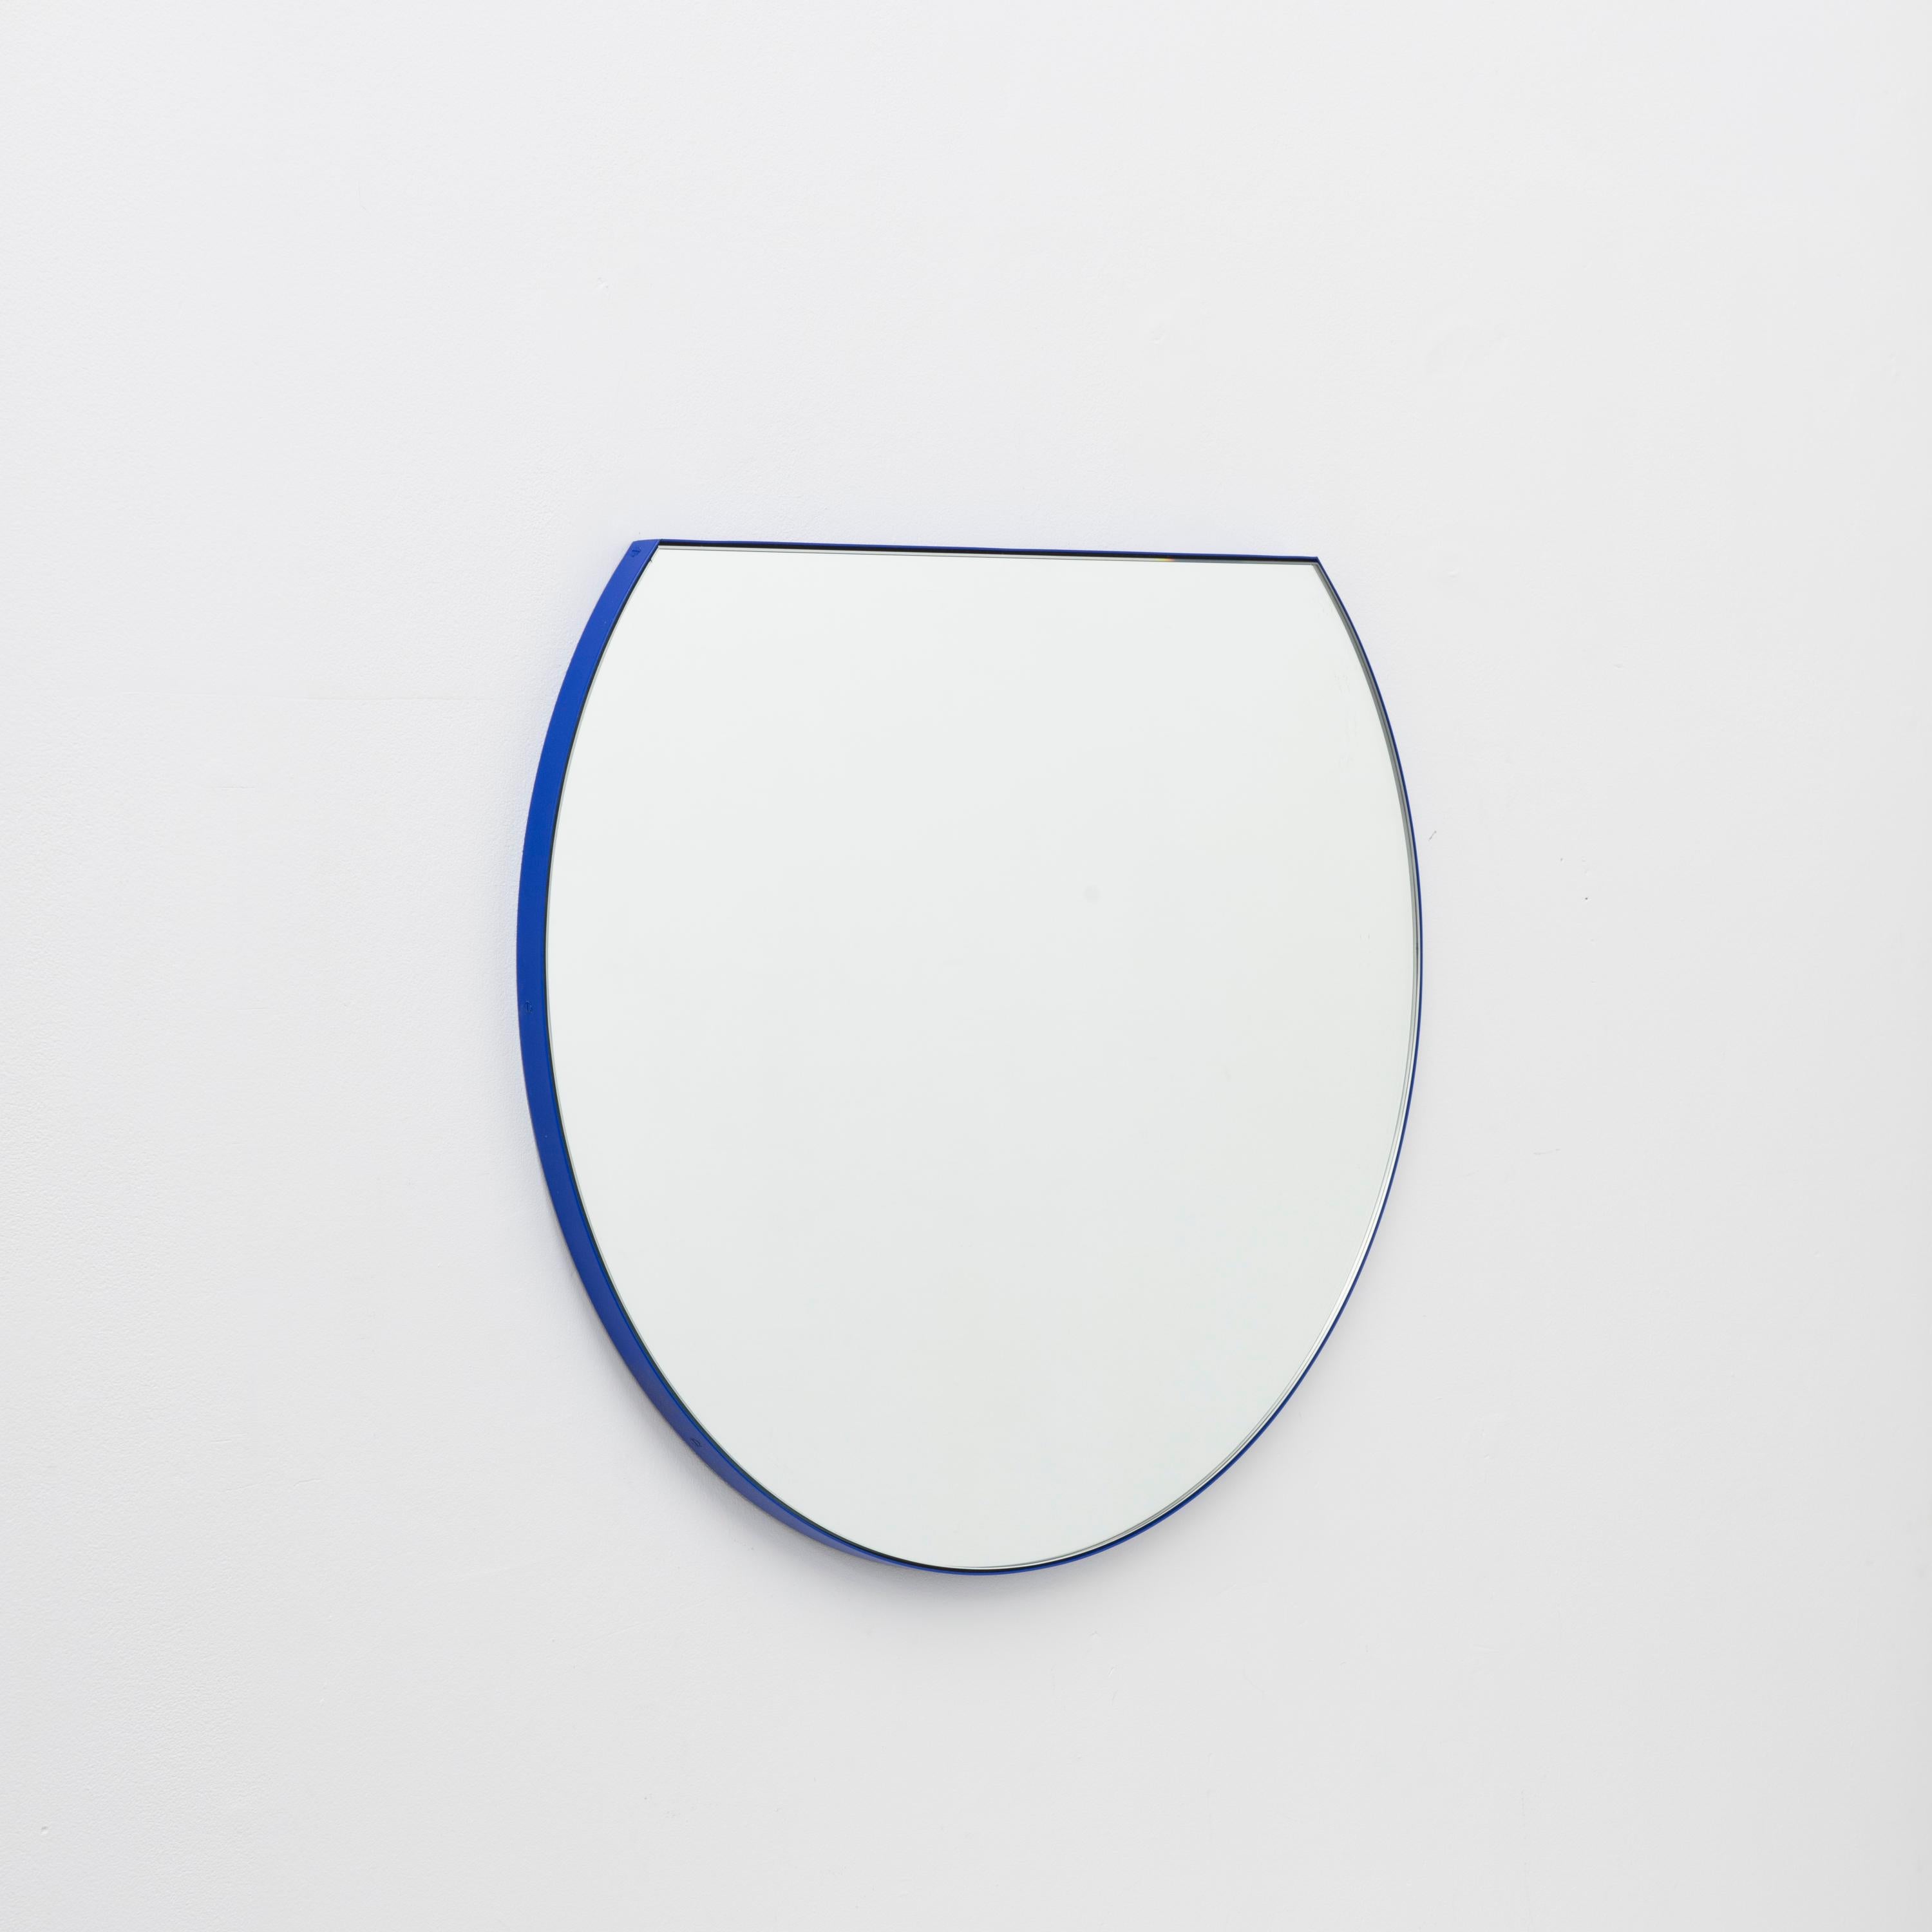 Nouveau miroir rond moderne avec un cadre bleu en aluminium à revêtement en poudre. Conçu et fabriqué à la main à Londres, au Royaume-Uni.

Equipé d'un crochet en laiton ou d'une barre en z en aluminium selon la taille du miroir. Également